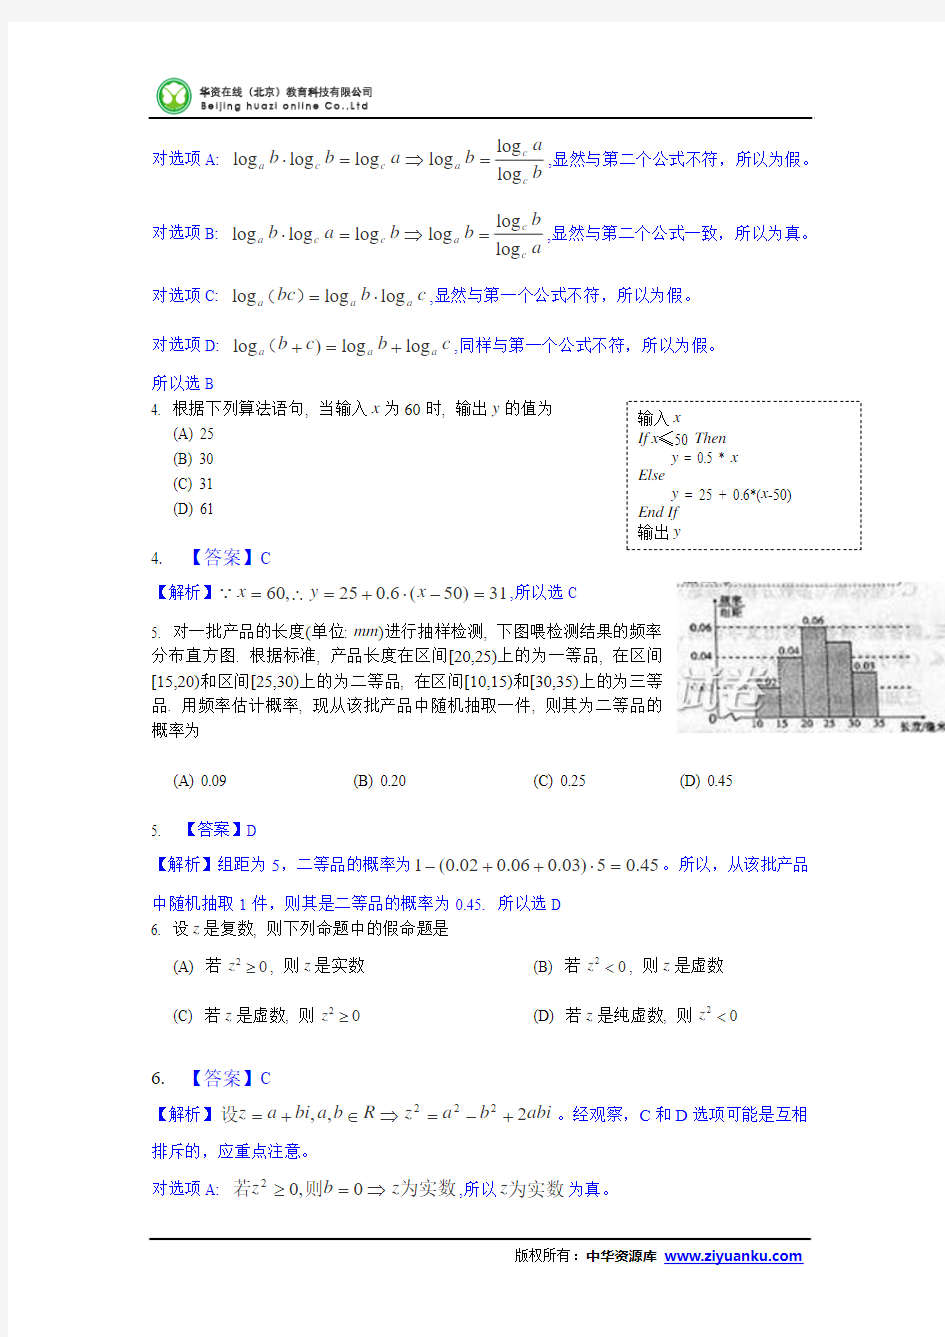 2013年高考真题——文科数学(陕西卷)解析版 Word版含答案